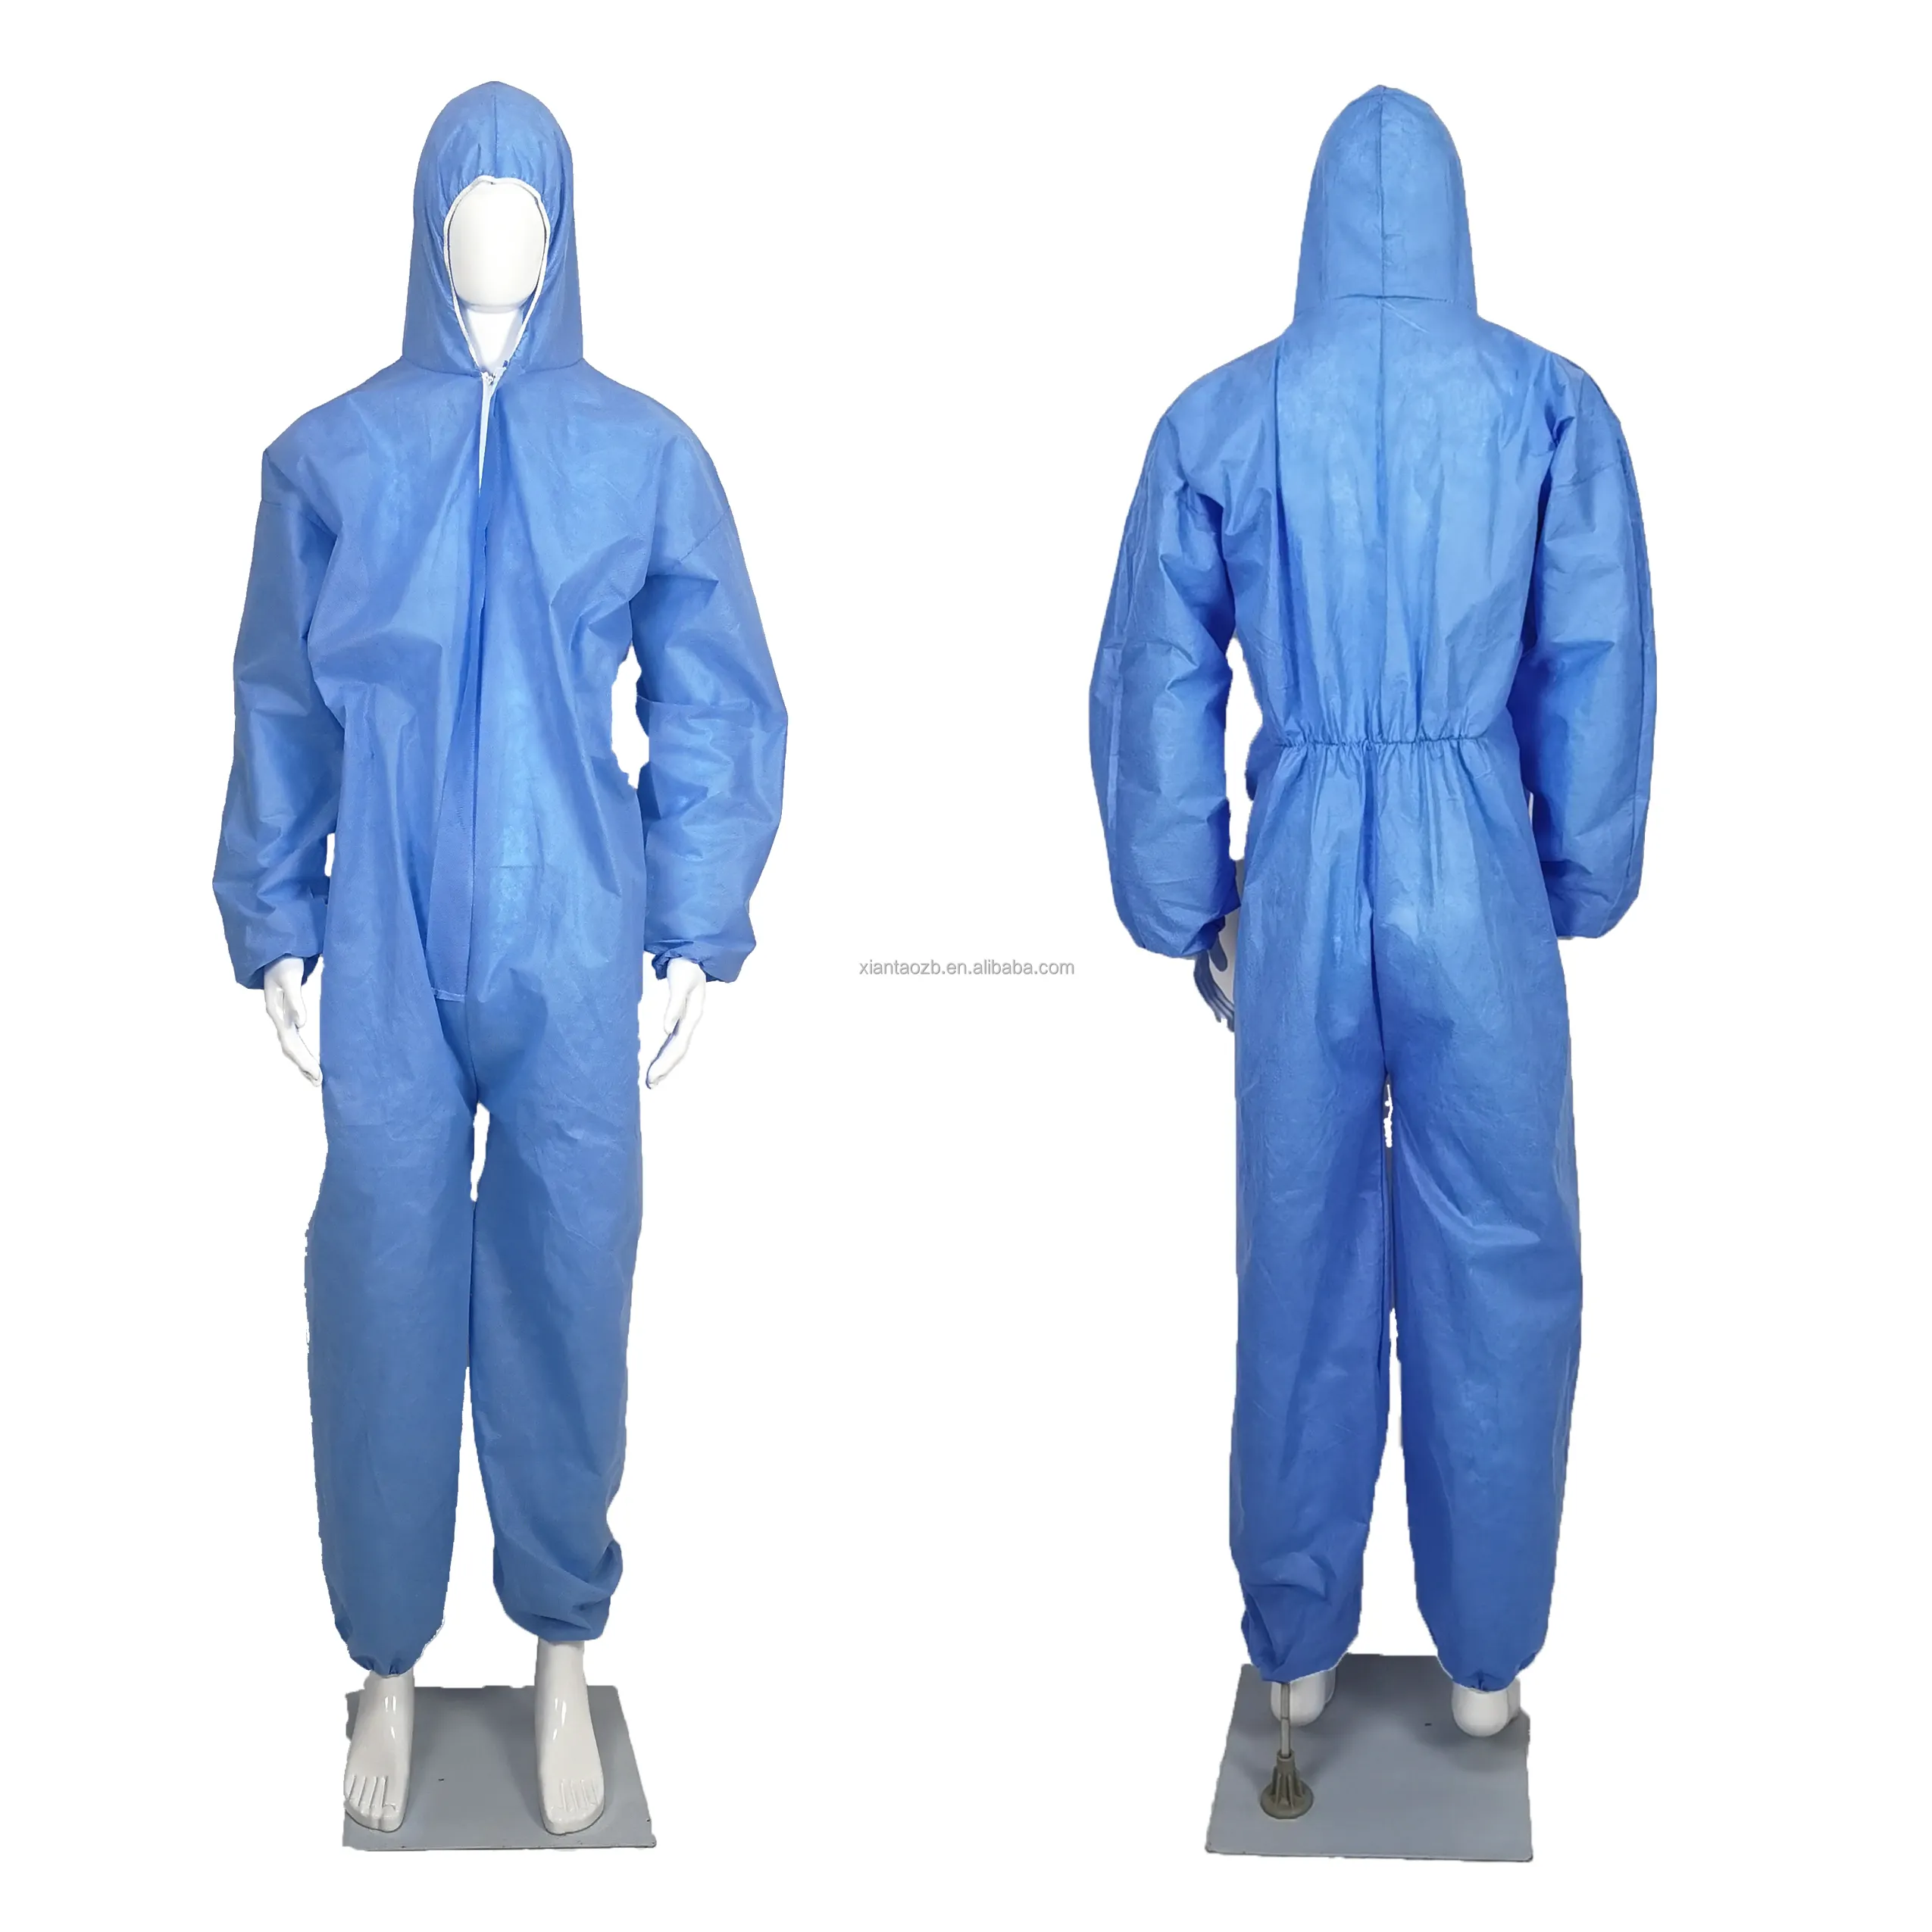 Tuta di abbigliamento di sicurezza non tessuta monouso blu 40g diretta in fabbrica tipo economico 5/6 tuta SMS abbigliamento protettivo medico